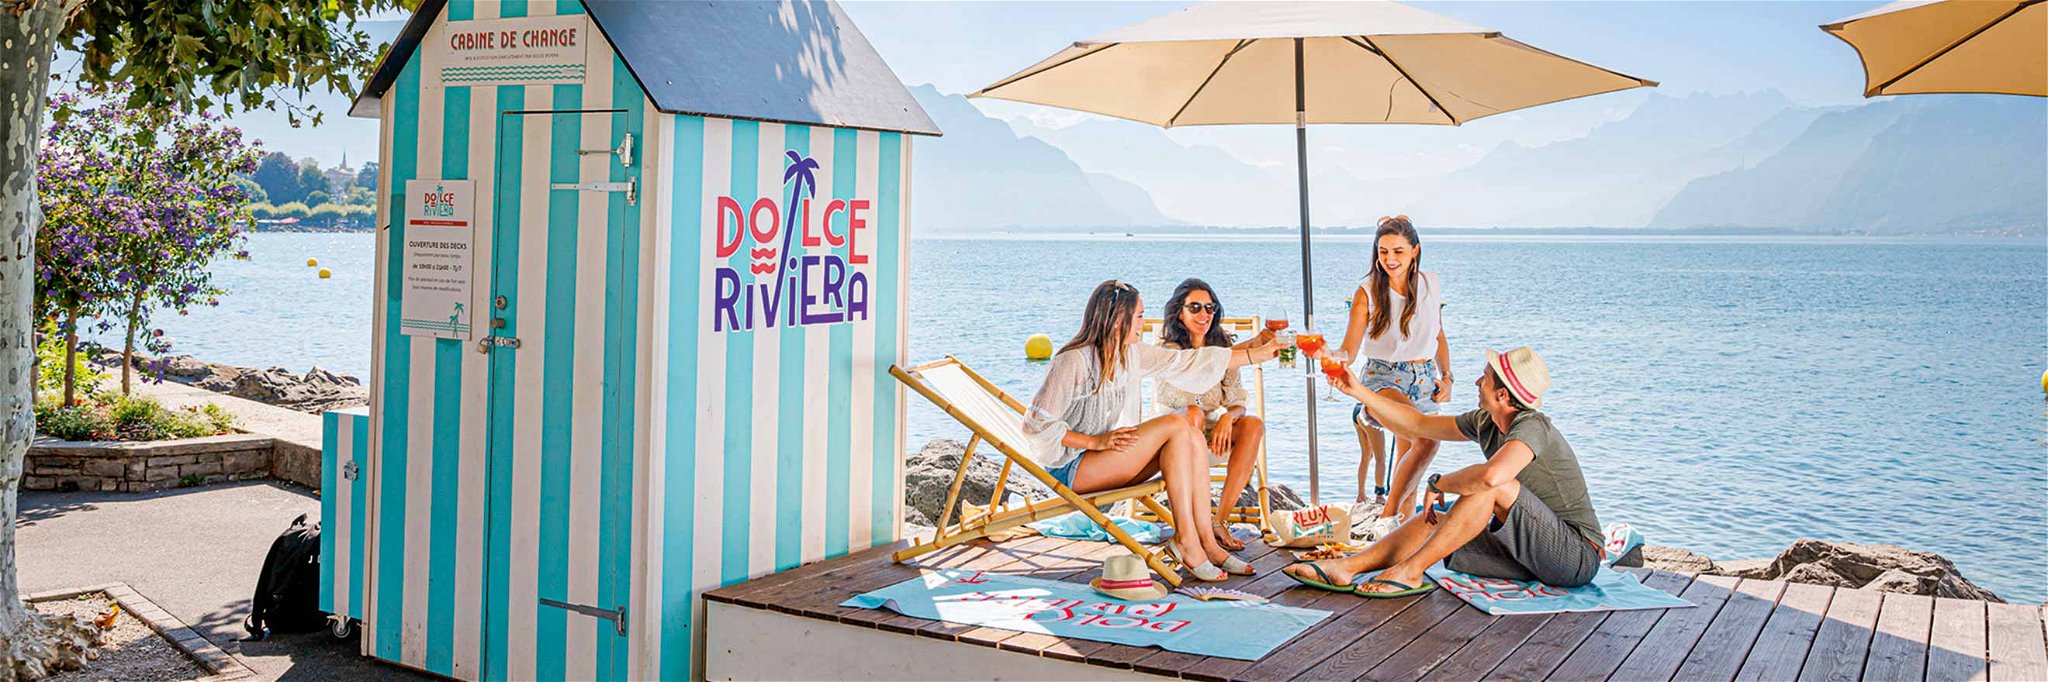 Ferienfeeling am Ufer des Genfersees: Die Dolce Riviera von Vevey.